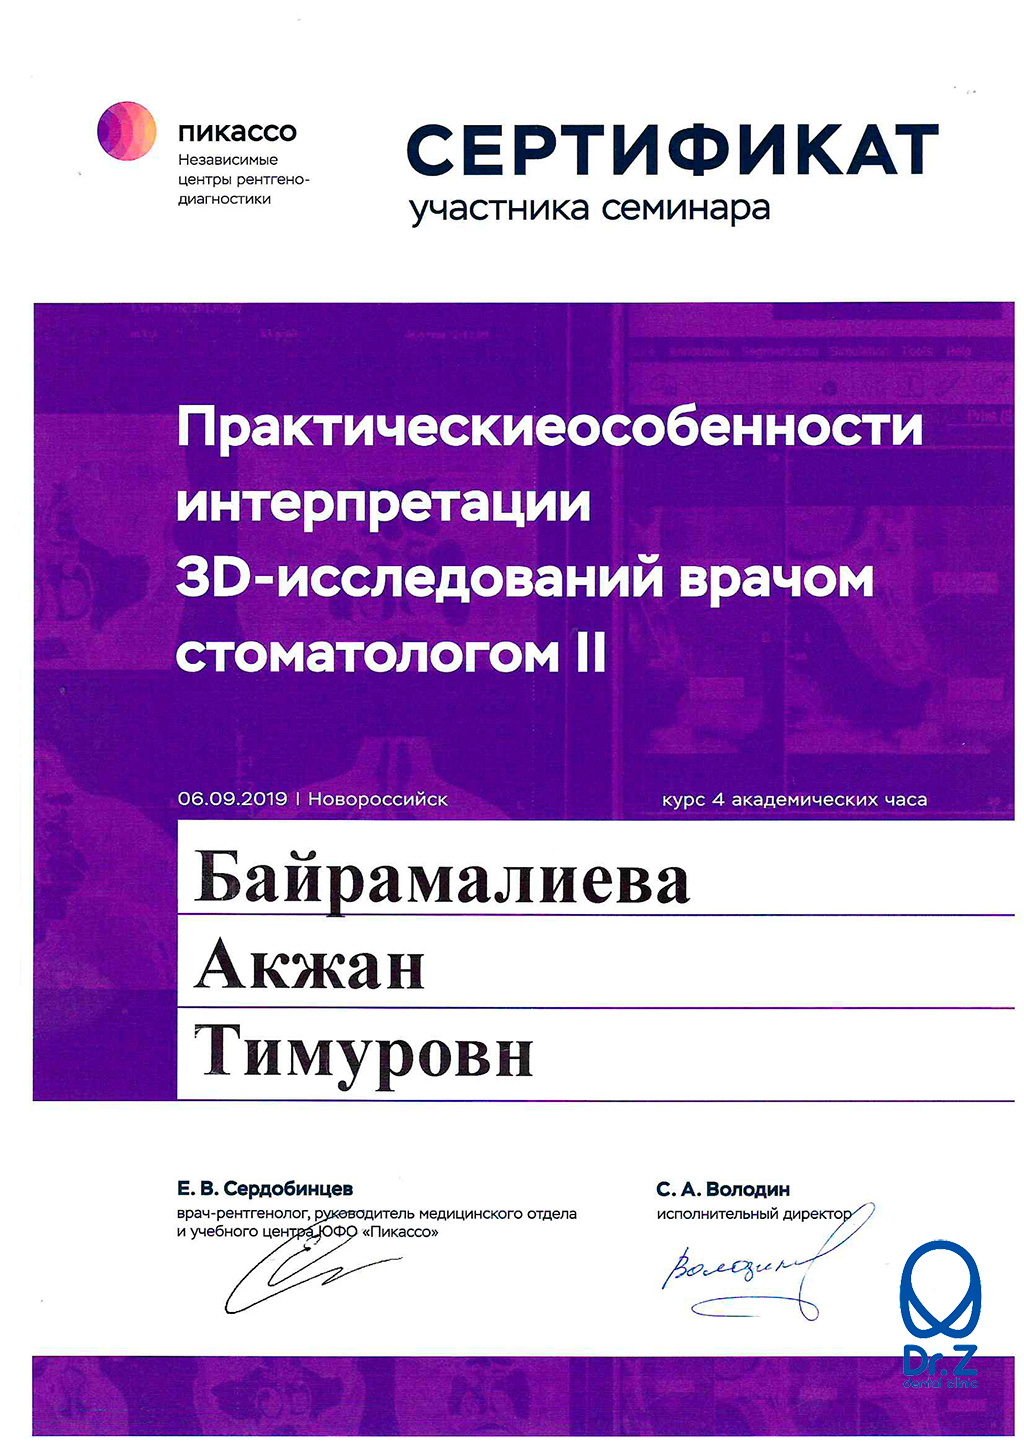 Сертификат выдан Байрамалиевой Акжан Тимуровне за участие в семинаре 